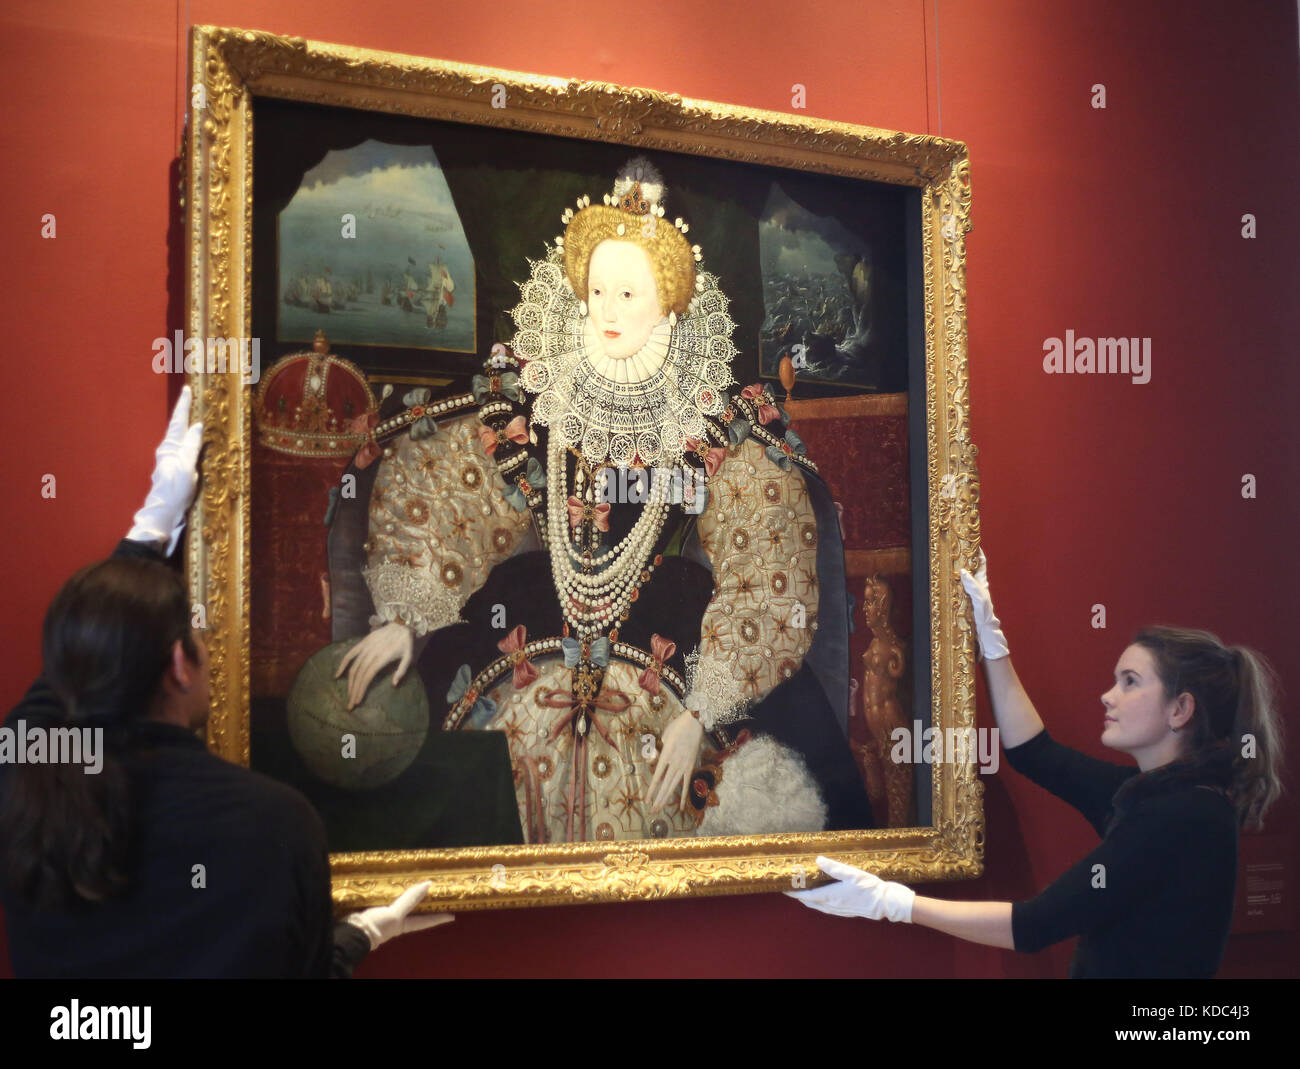 Réinstallez les gestionnaires d'art portrait d'armada elizabeth i dans le Queen's house, royal museums Greenwich, Londres, à la suite de travaux de conservation. Banque D'Images